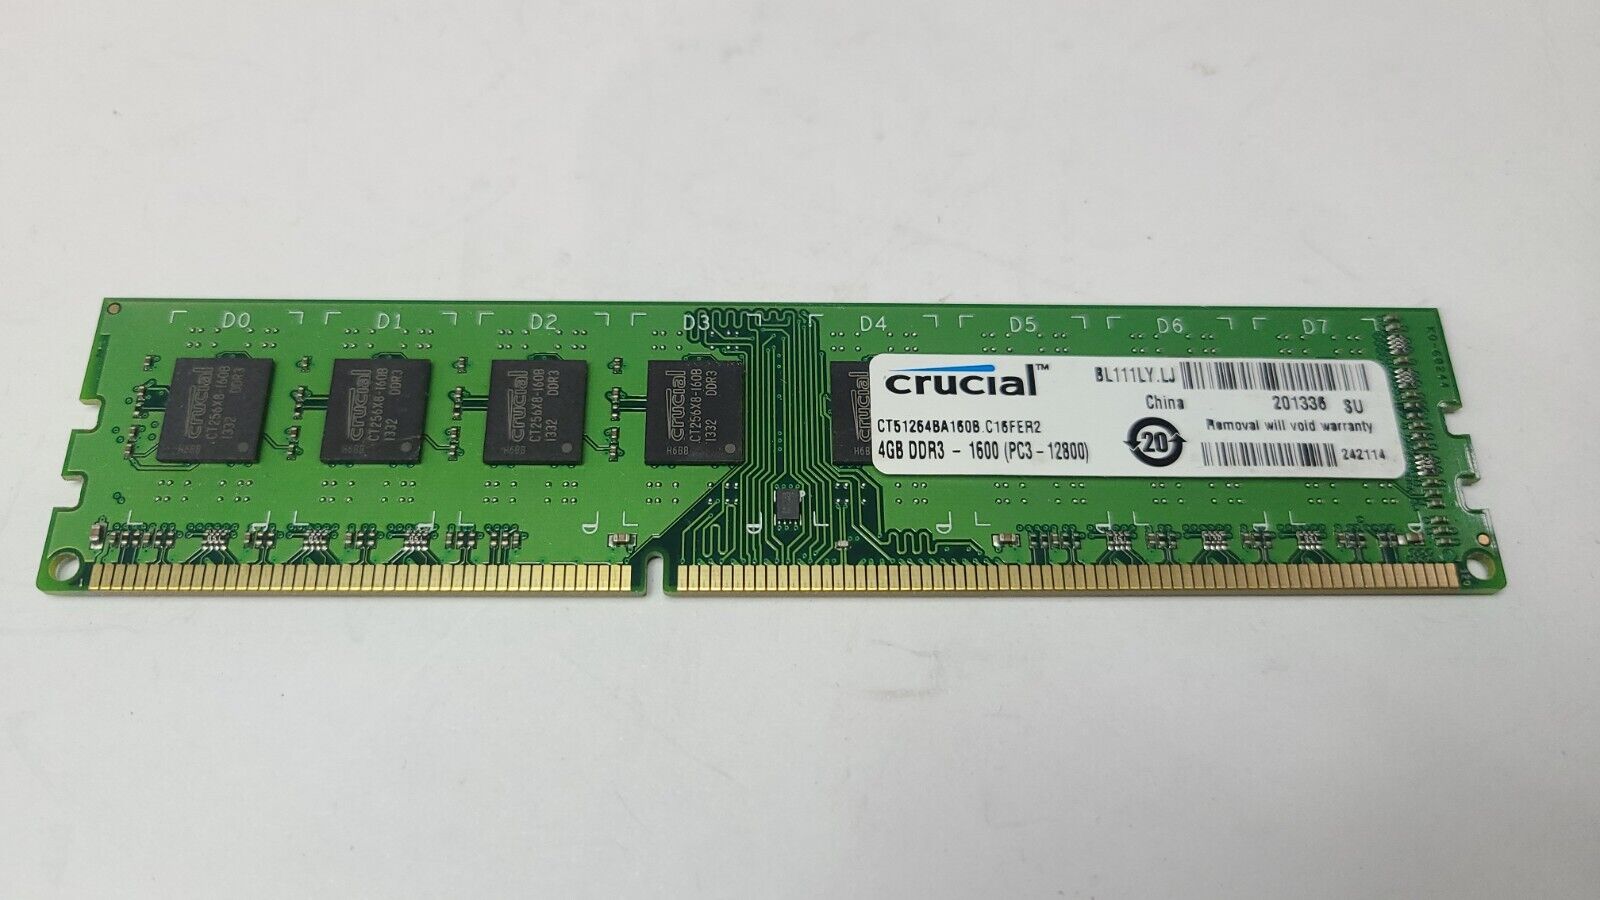 Crucial 4GB DDR3 1600MHz PC3-12800 Desktop Ram | CT51264BA160B.C16FER2 | Tested